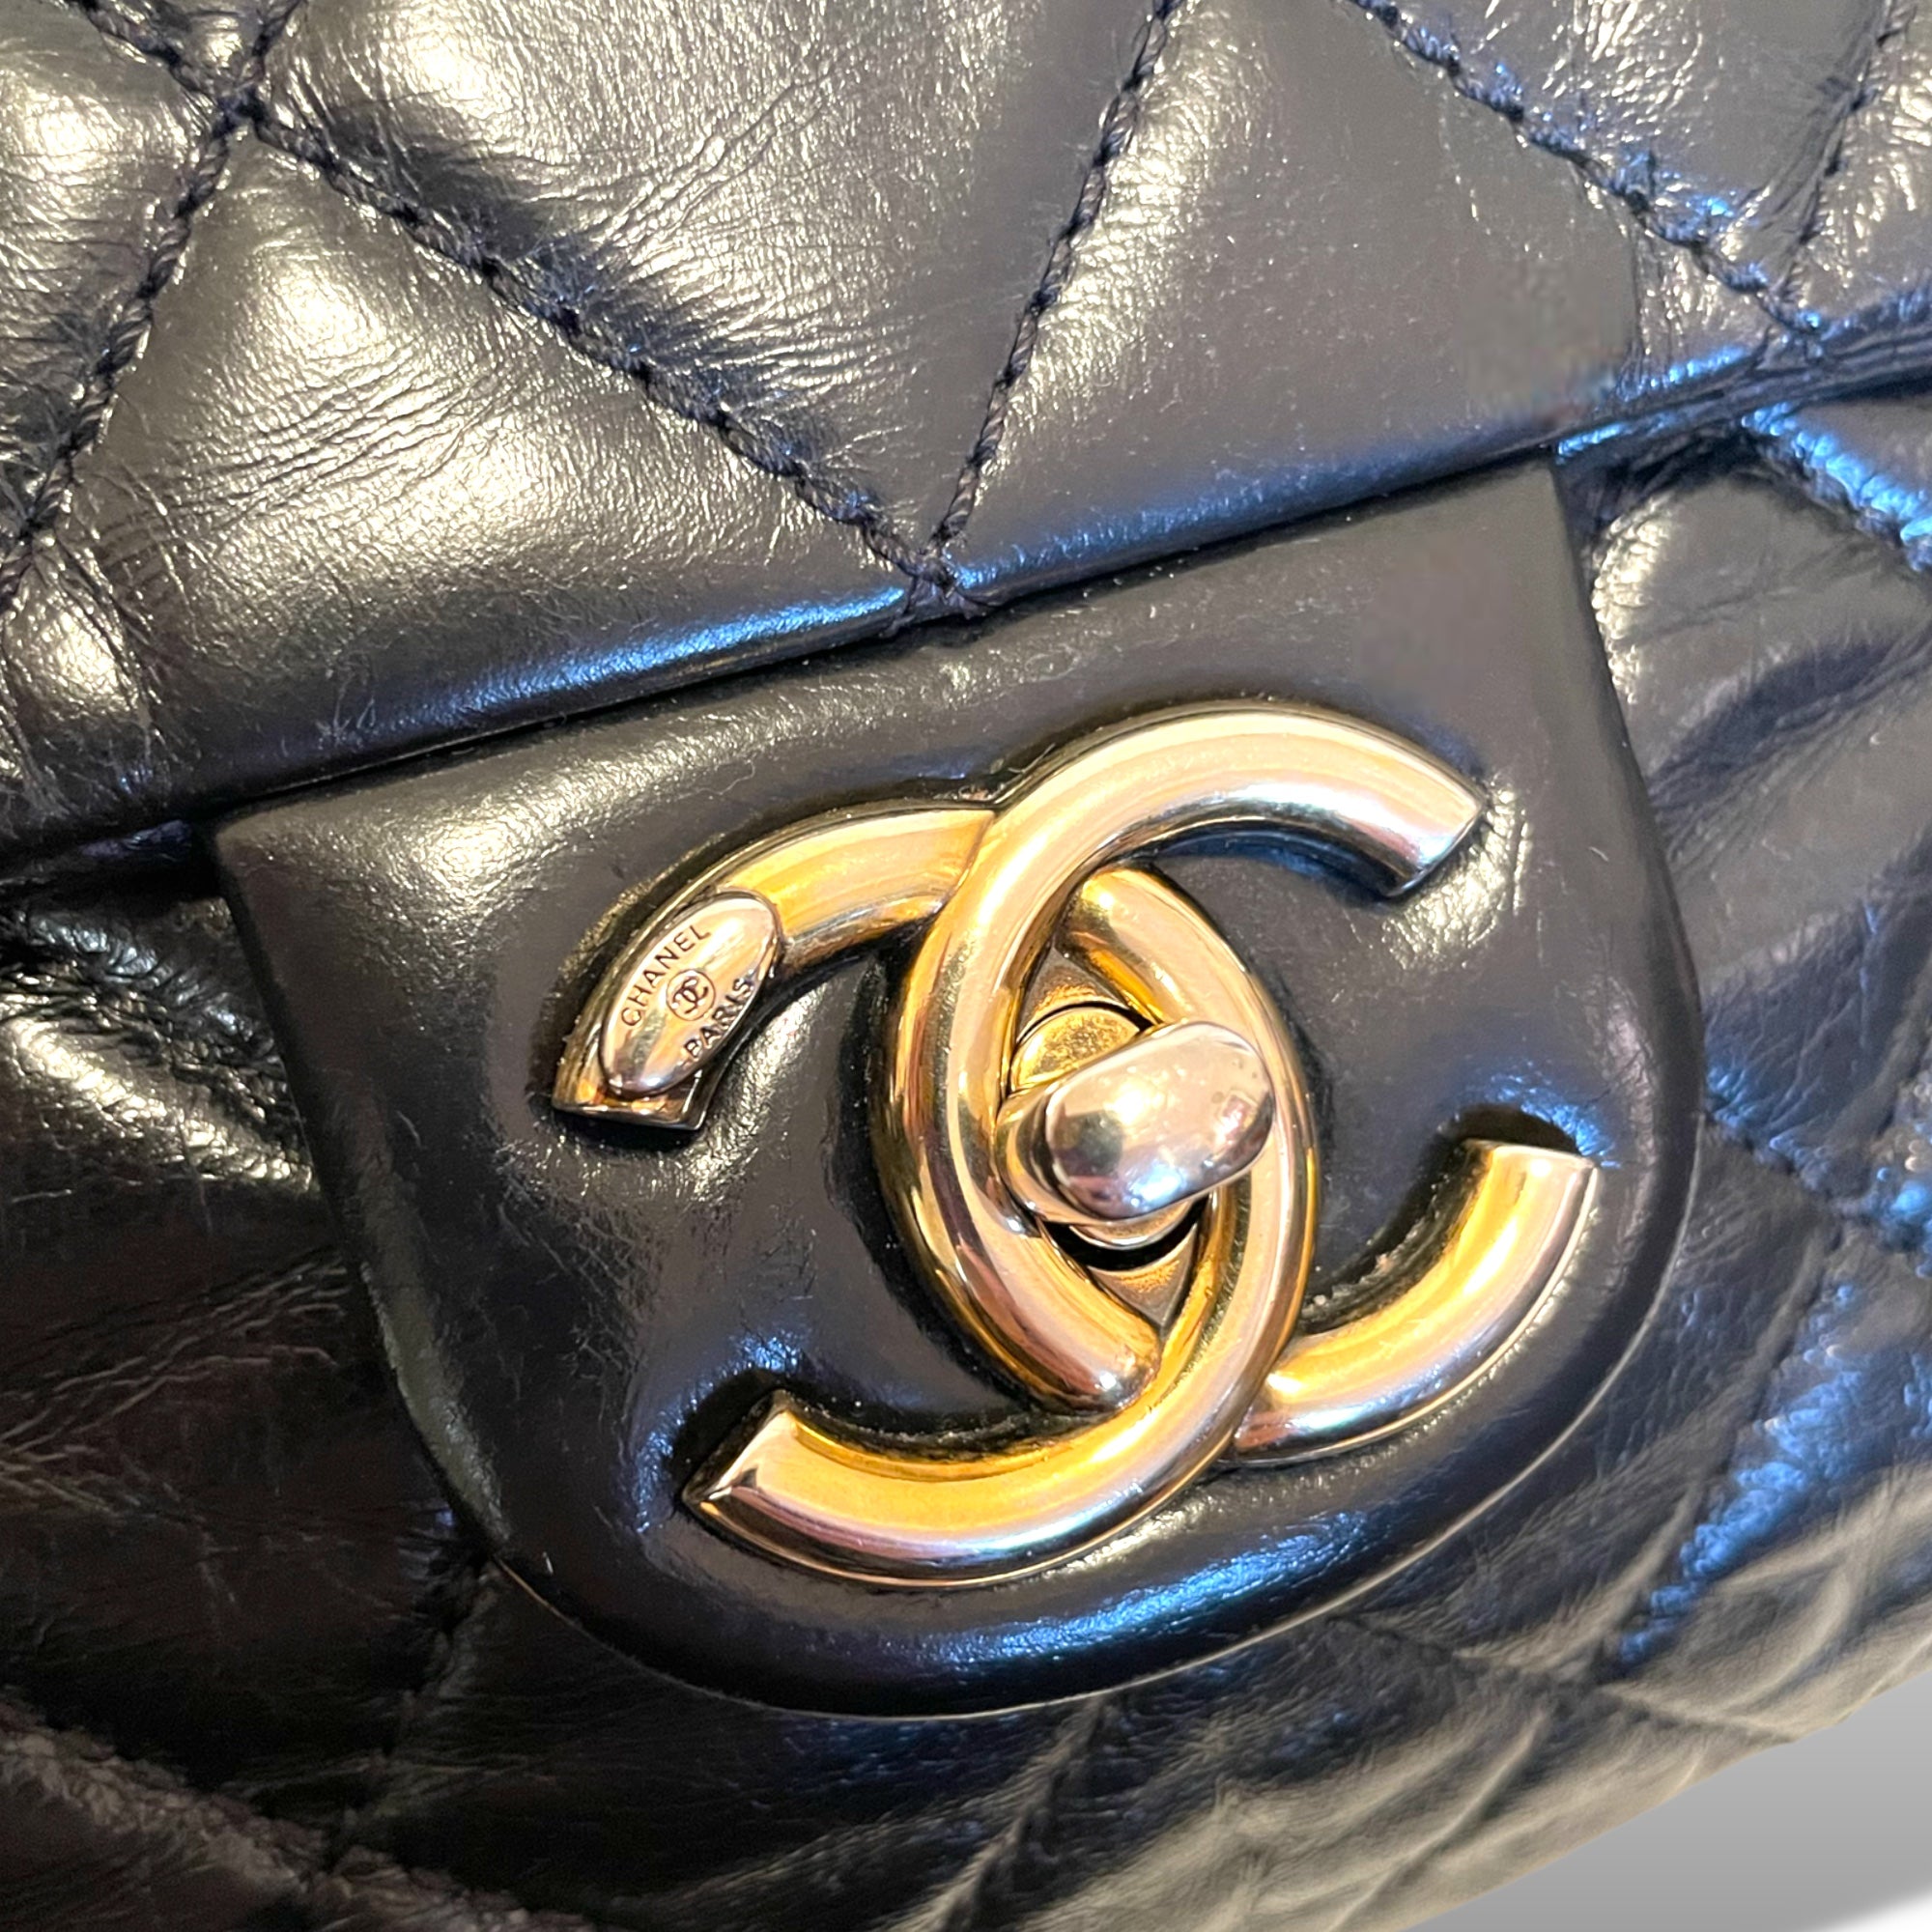 CHANEL Glazed Calfskin Castle Rock Black & Antiqued Gold-Tone Hardware Flap Bag